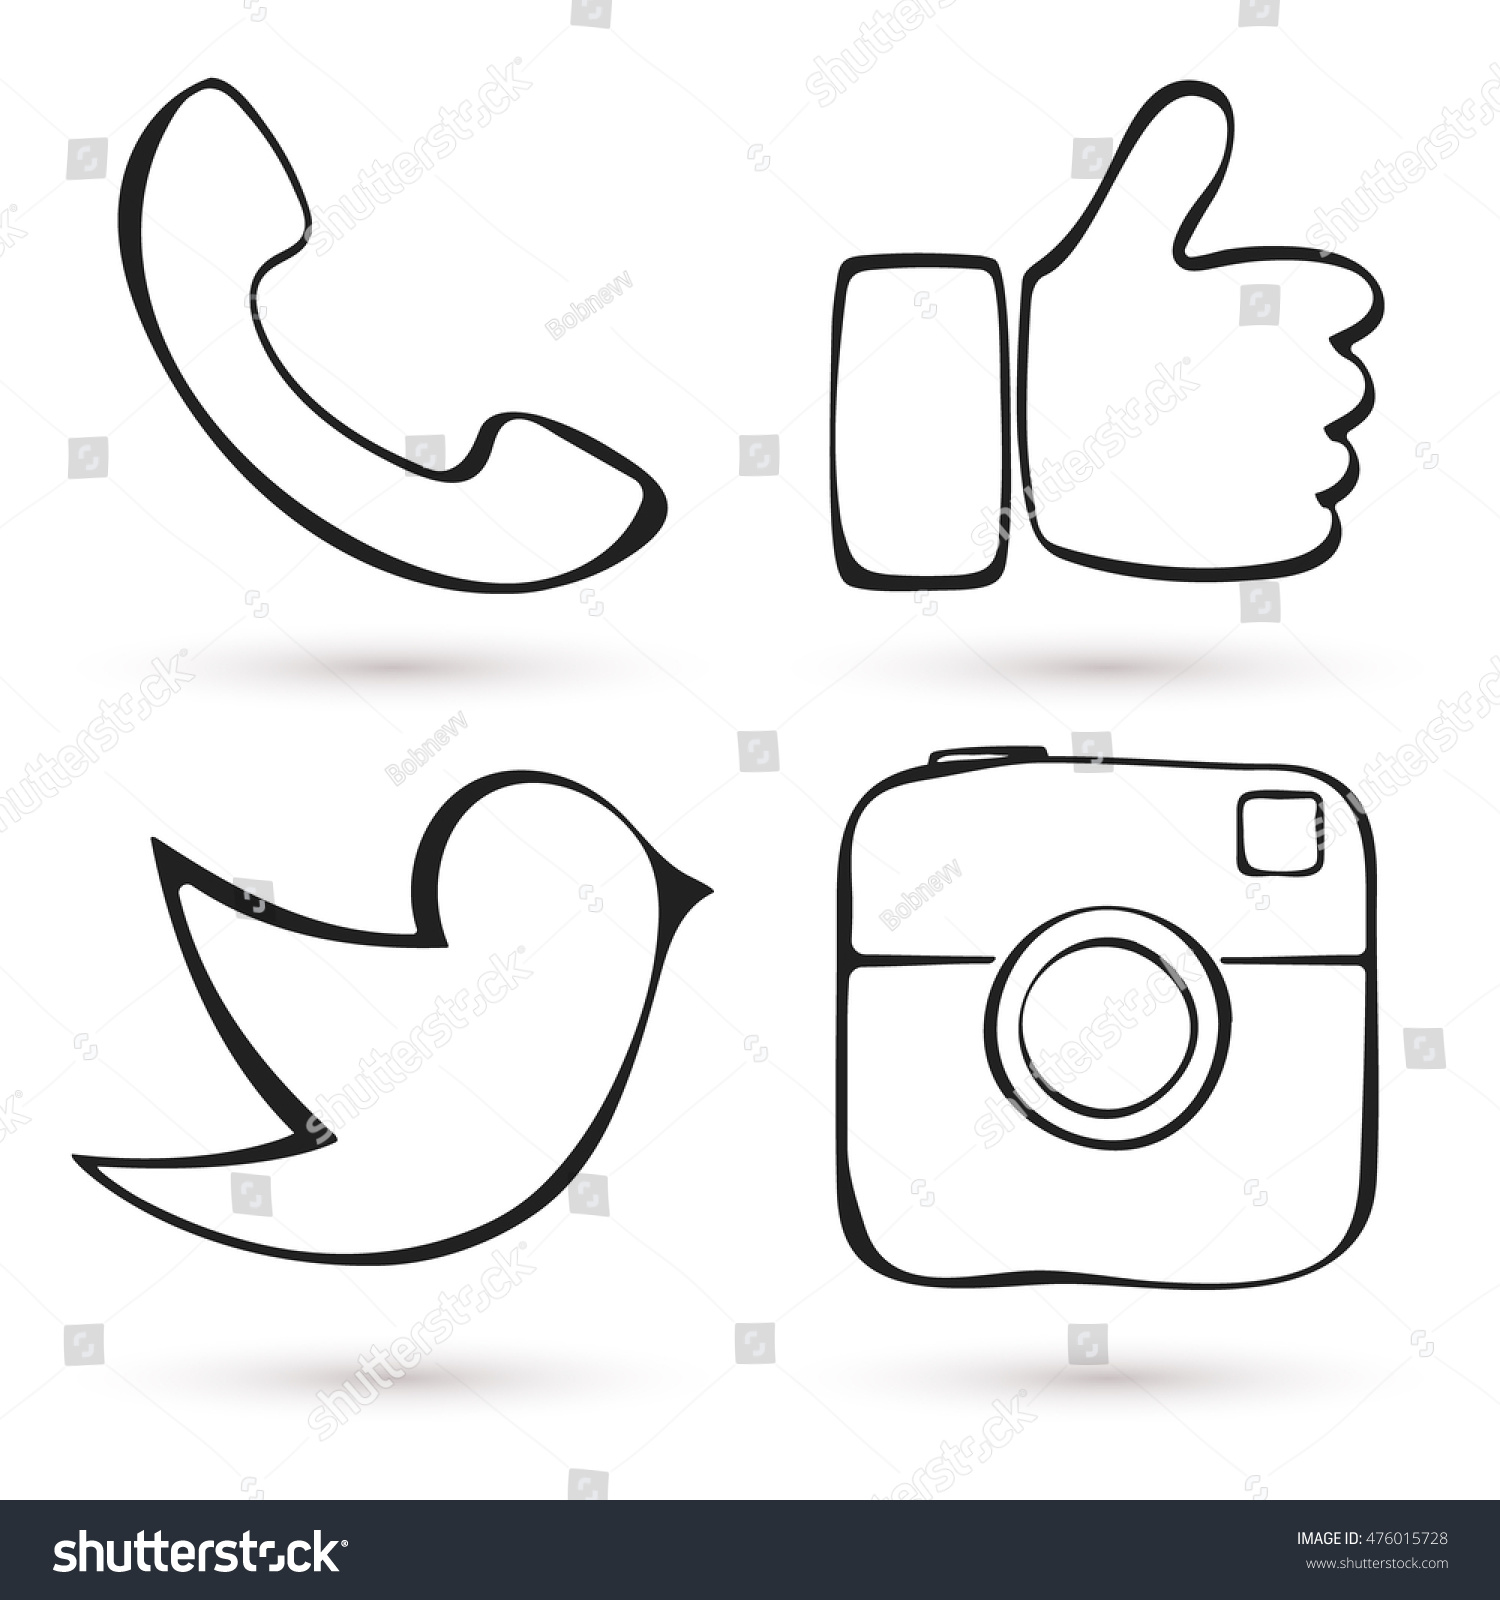 Social media icon set. Hand drawn design. Like hand symbol, digital camera, messenger bird. Vector illustration. #476015728